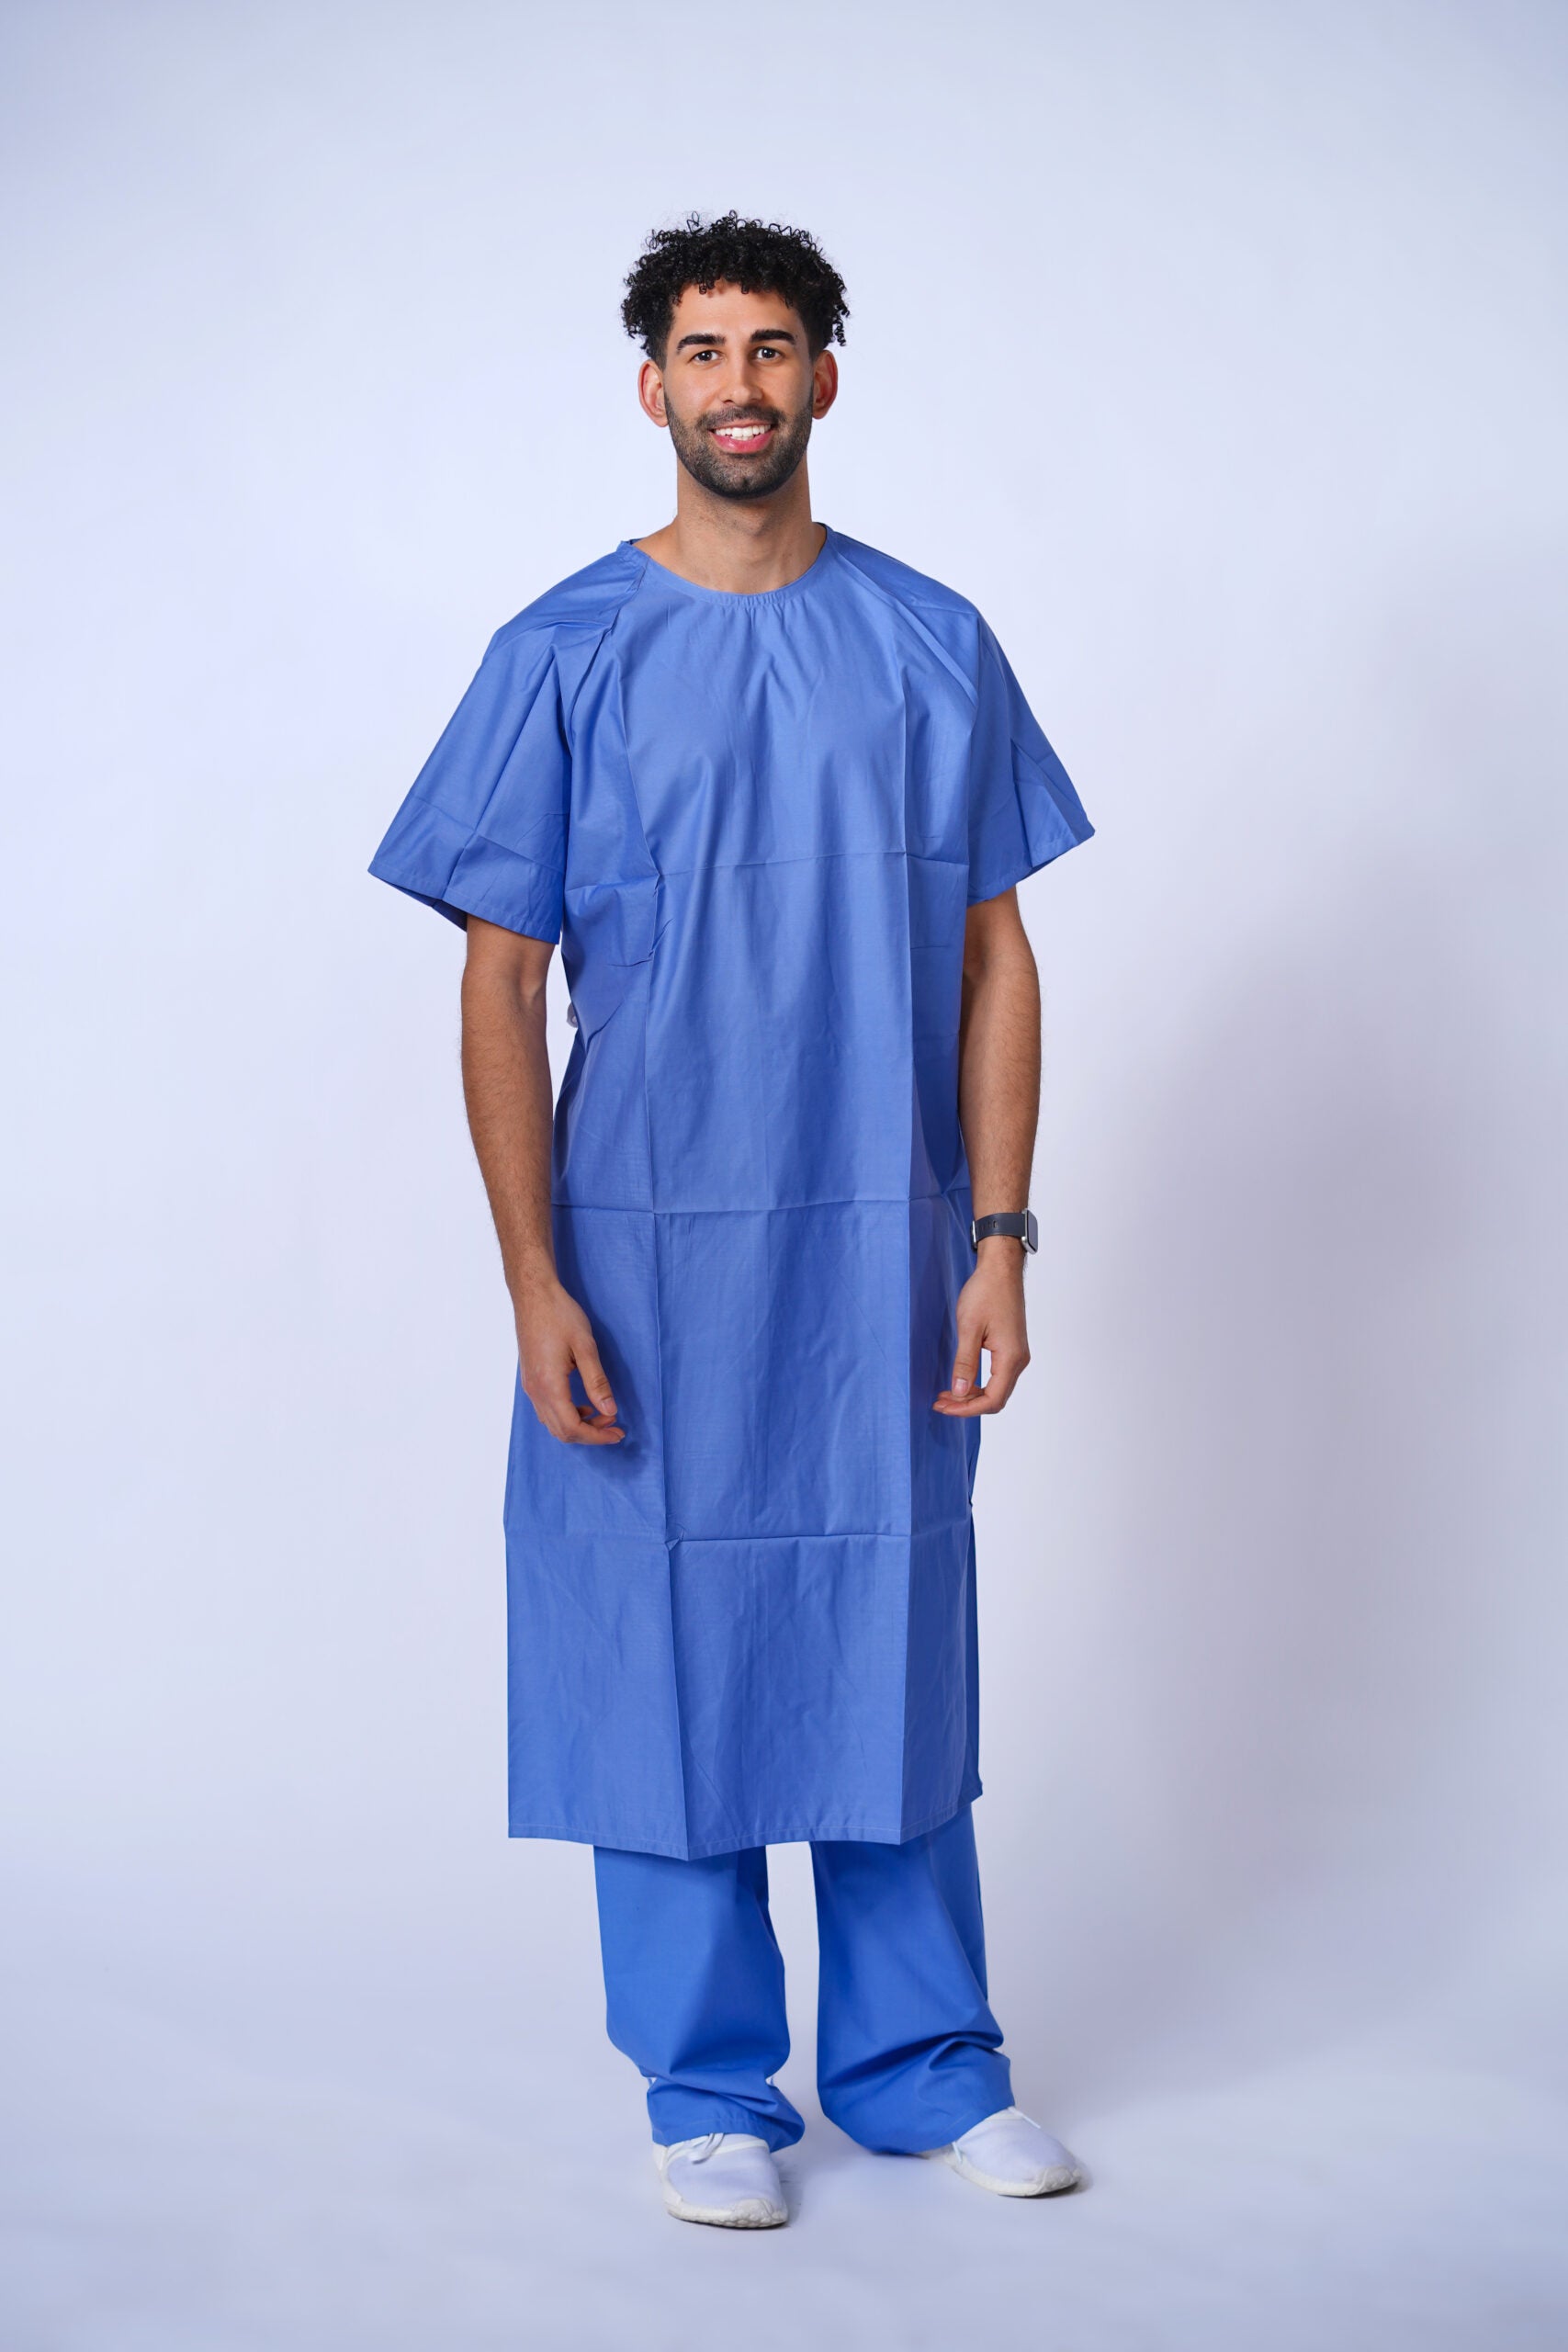 Blue Patient Gowns